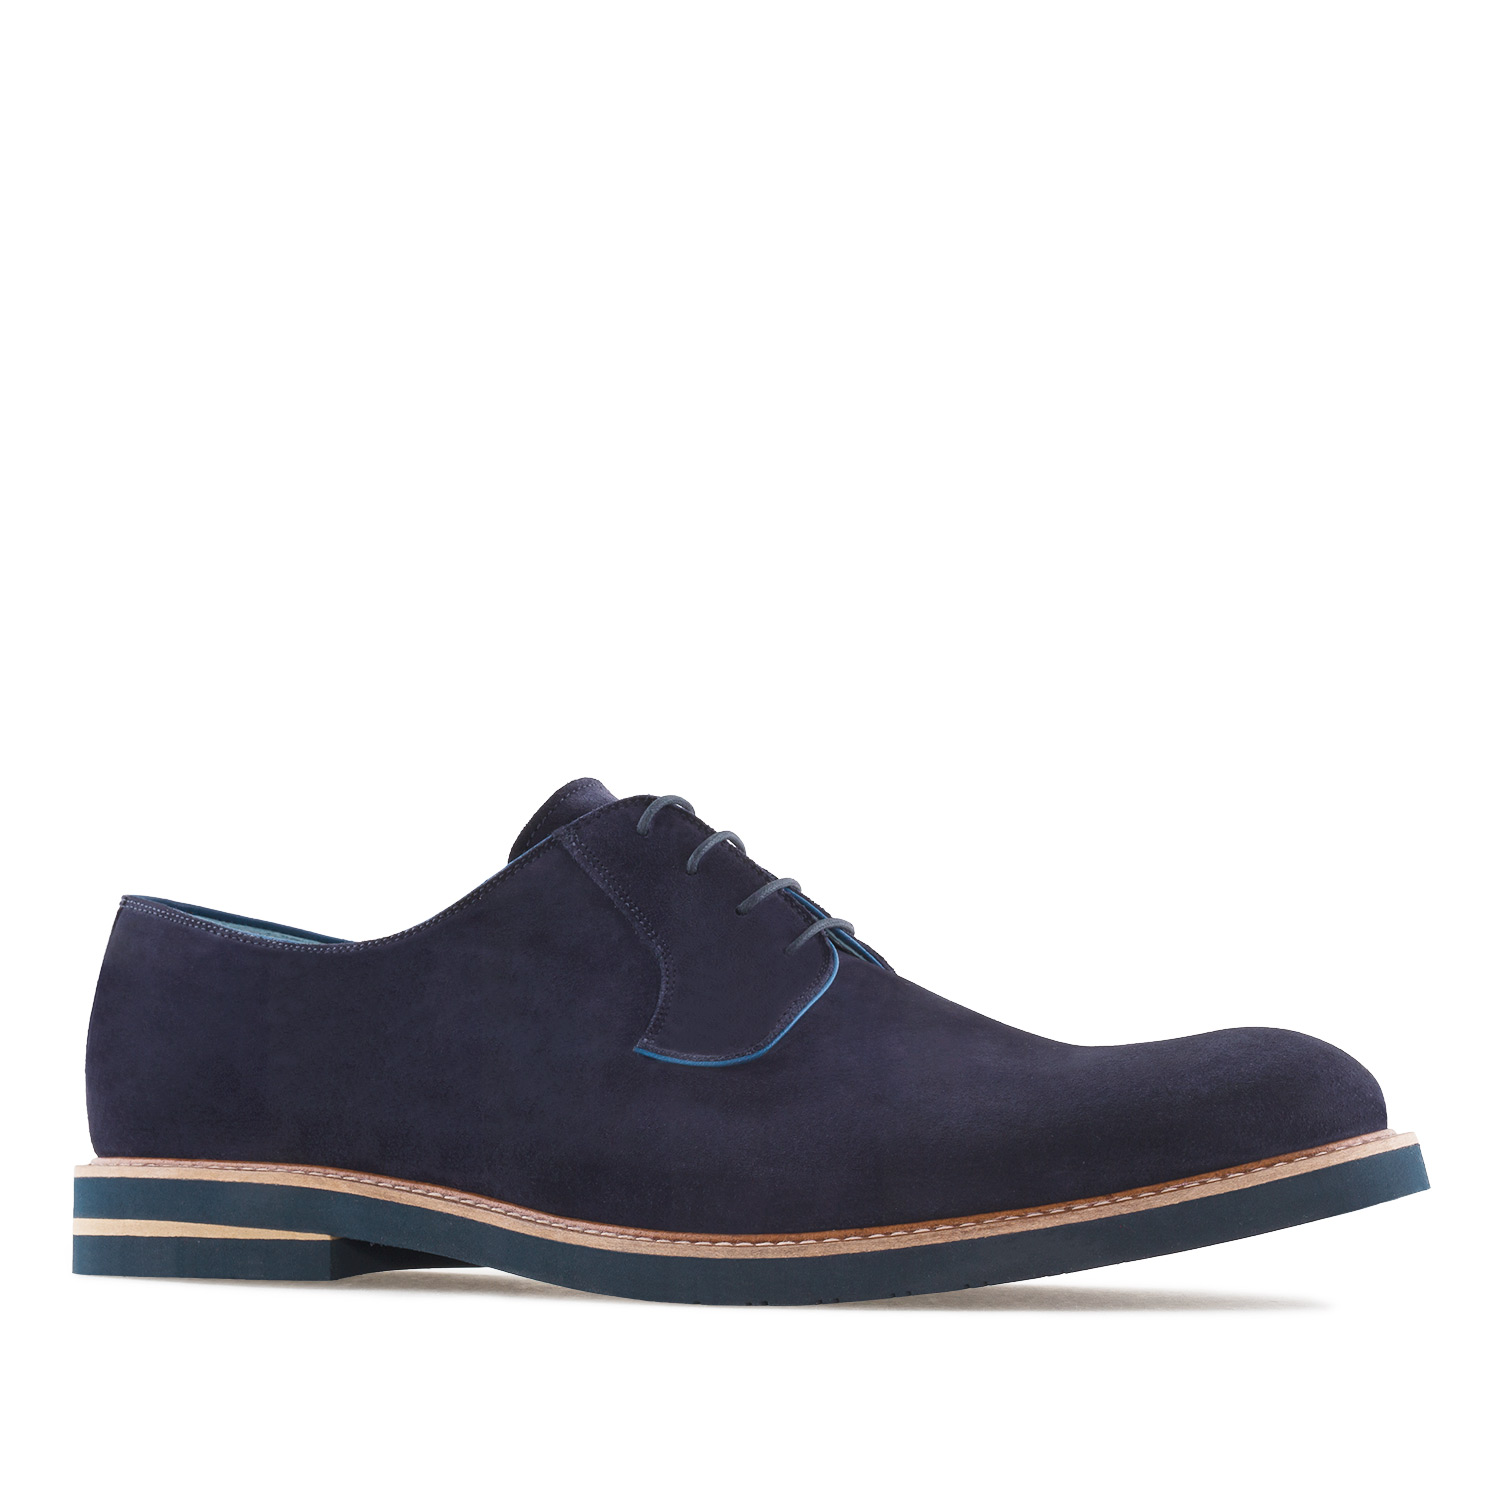 Chaussures Hommes Style Oxford en Cuir Suéde Bleu 